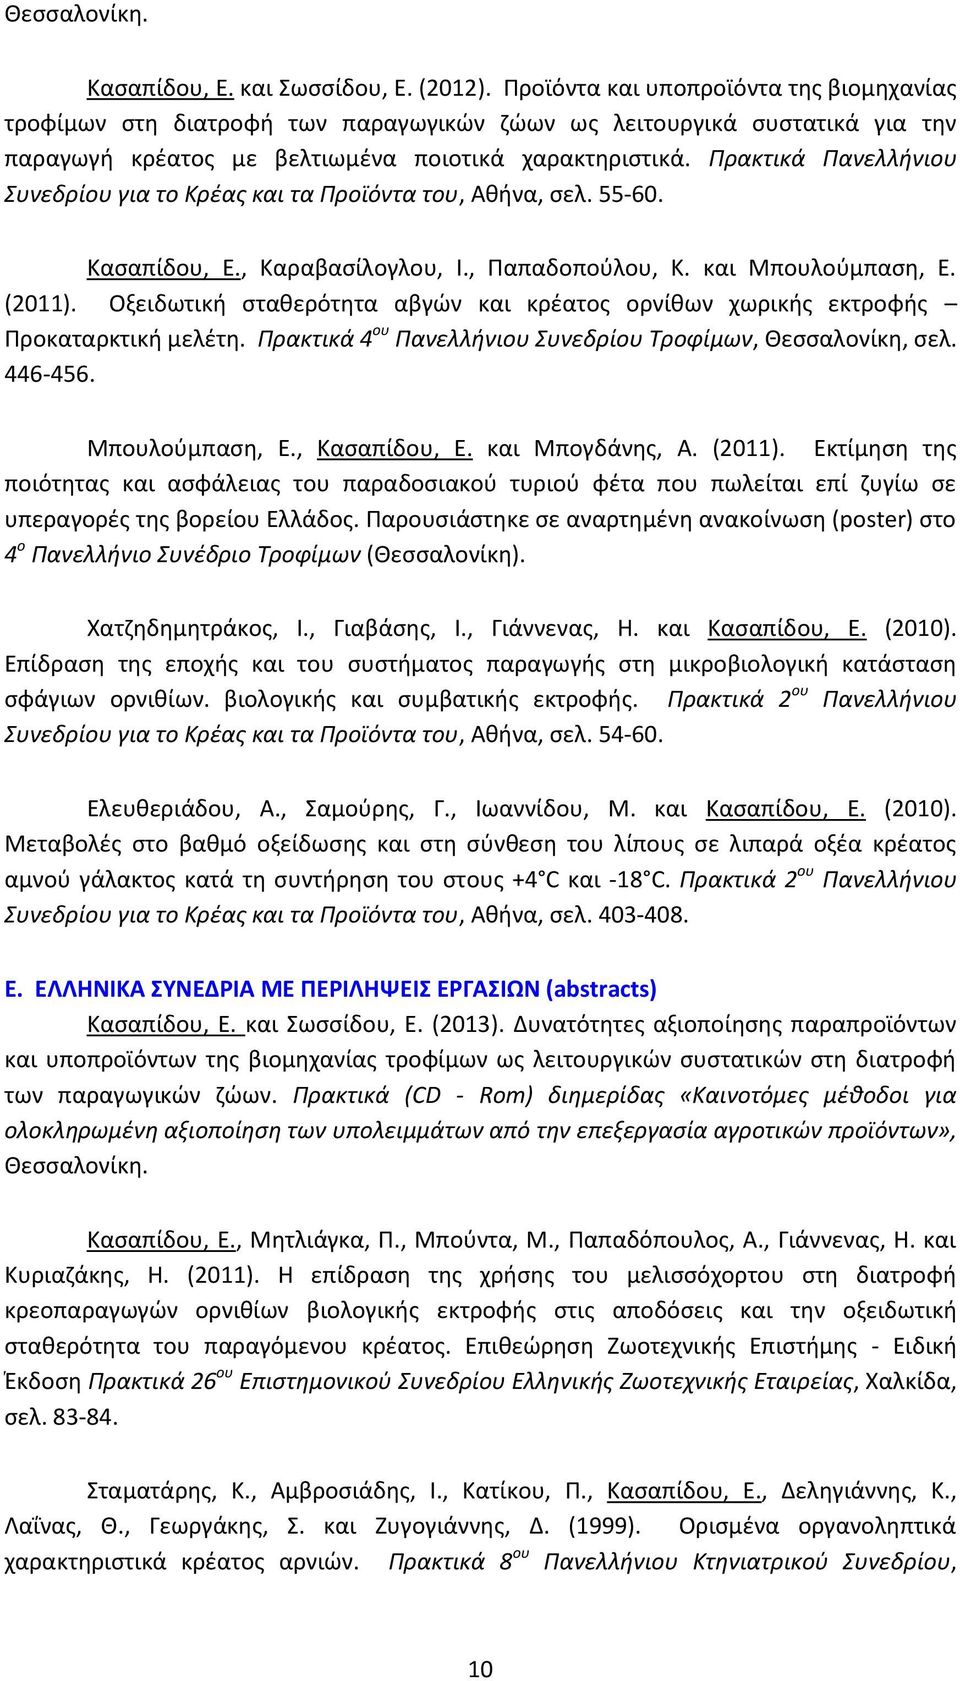 Πρακτικά Πανελλήνιου Συνεδρίου για το Κρέας και τα Προϊόντα του, Αθήνα, σελ. 55-60. Κασαπίδου, Ε., Καραβασίλογλου, Ι., Παπαδοπούλου, Κ. και Μπουλούμπαση, Ε. (2011).